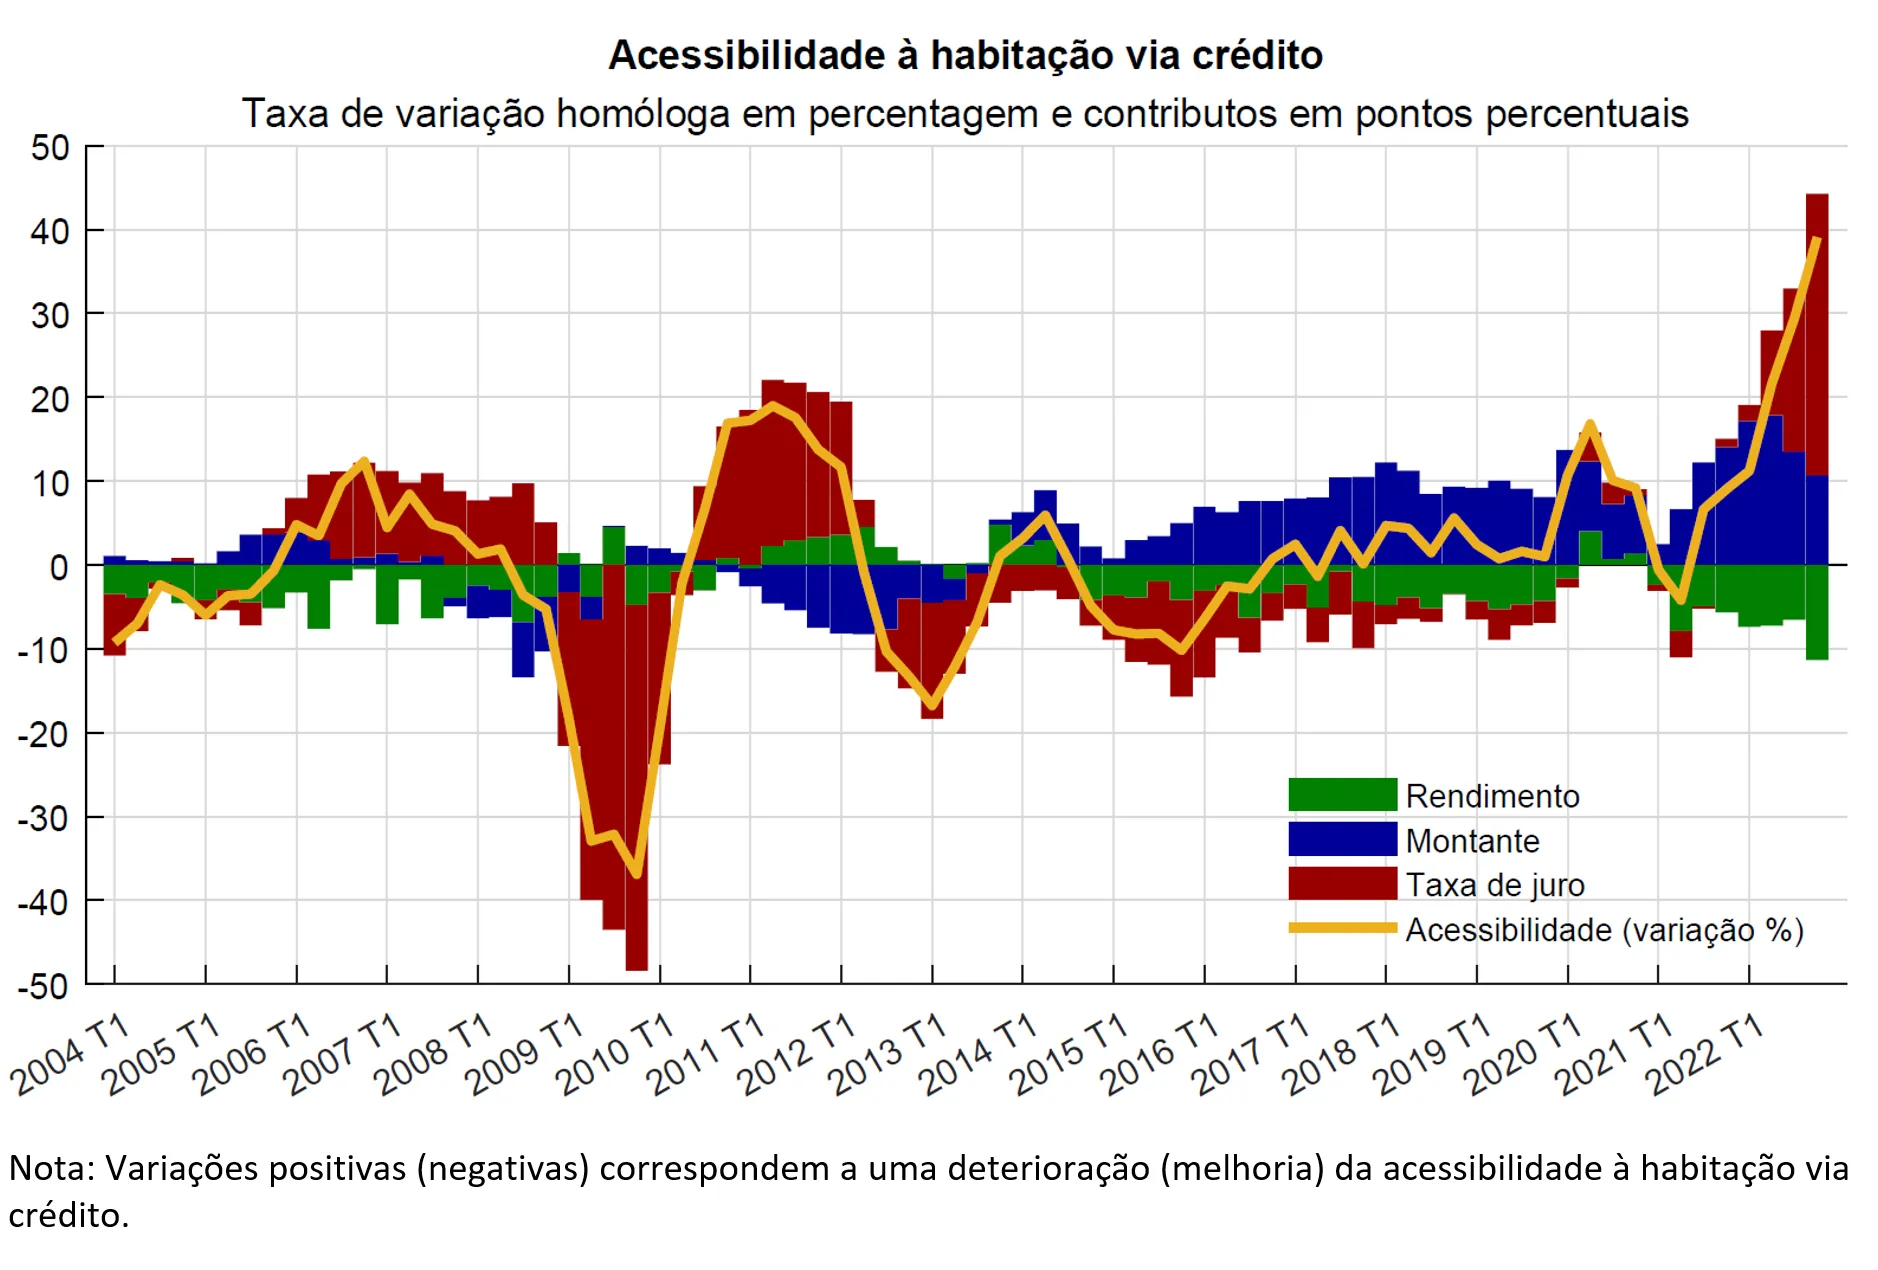 Economia numa imagem: A acessibilidade à habitação via crédito em Portugal deteriorou-se nos últimos anos